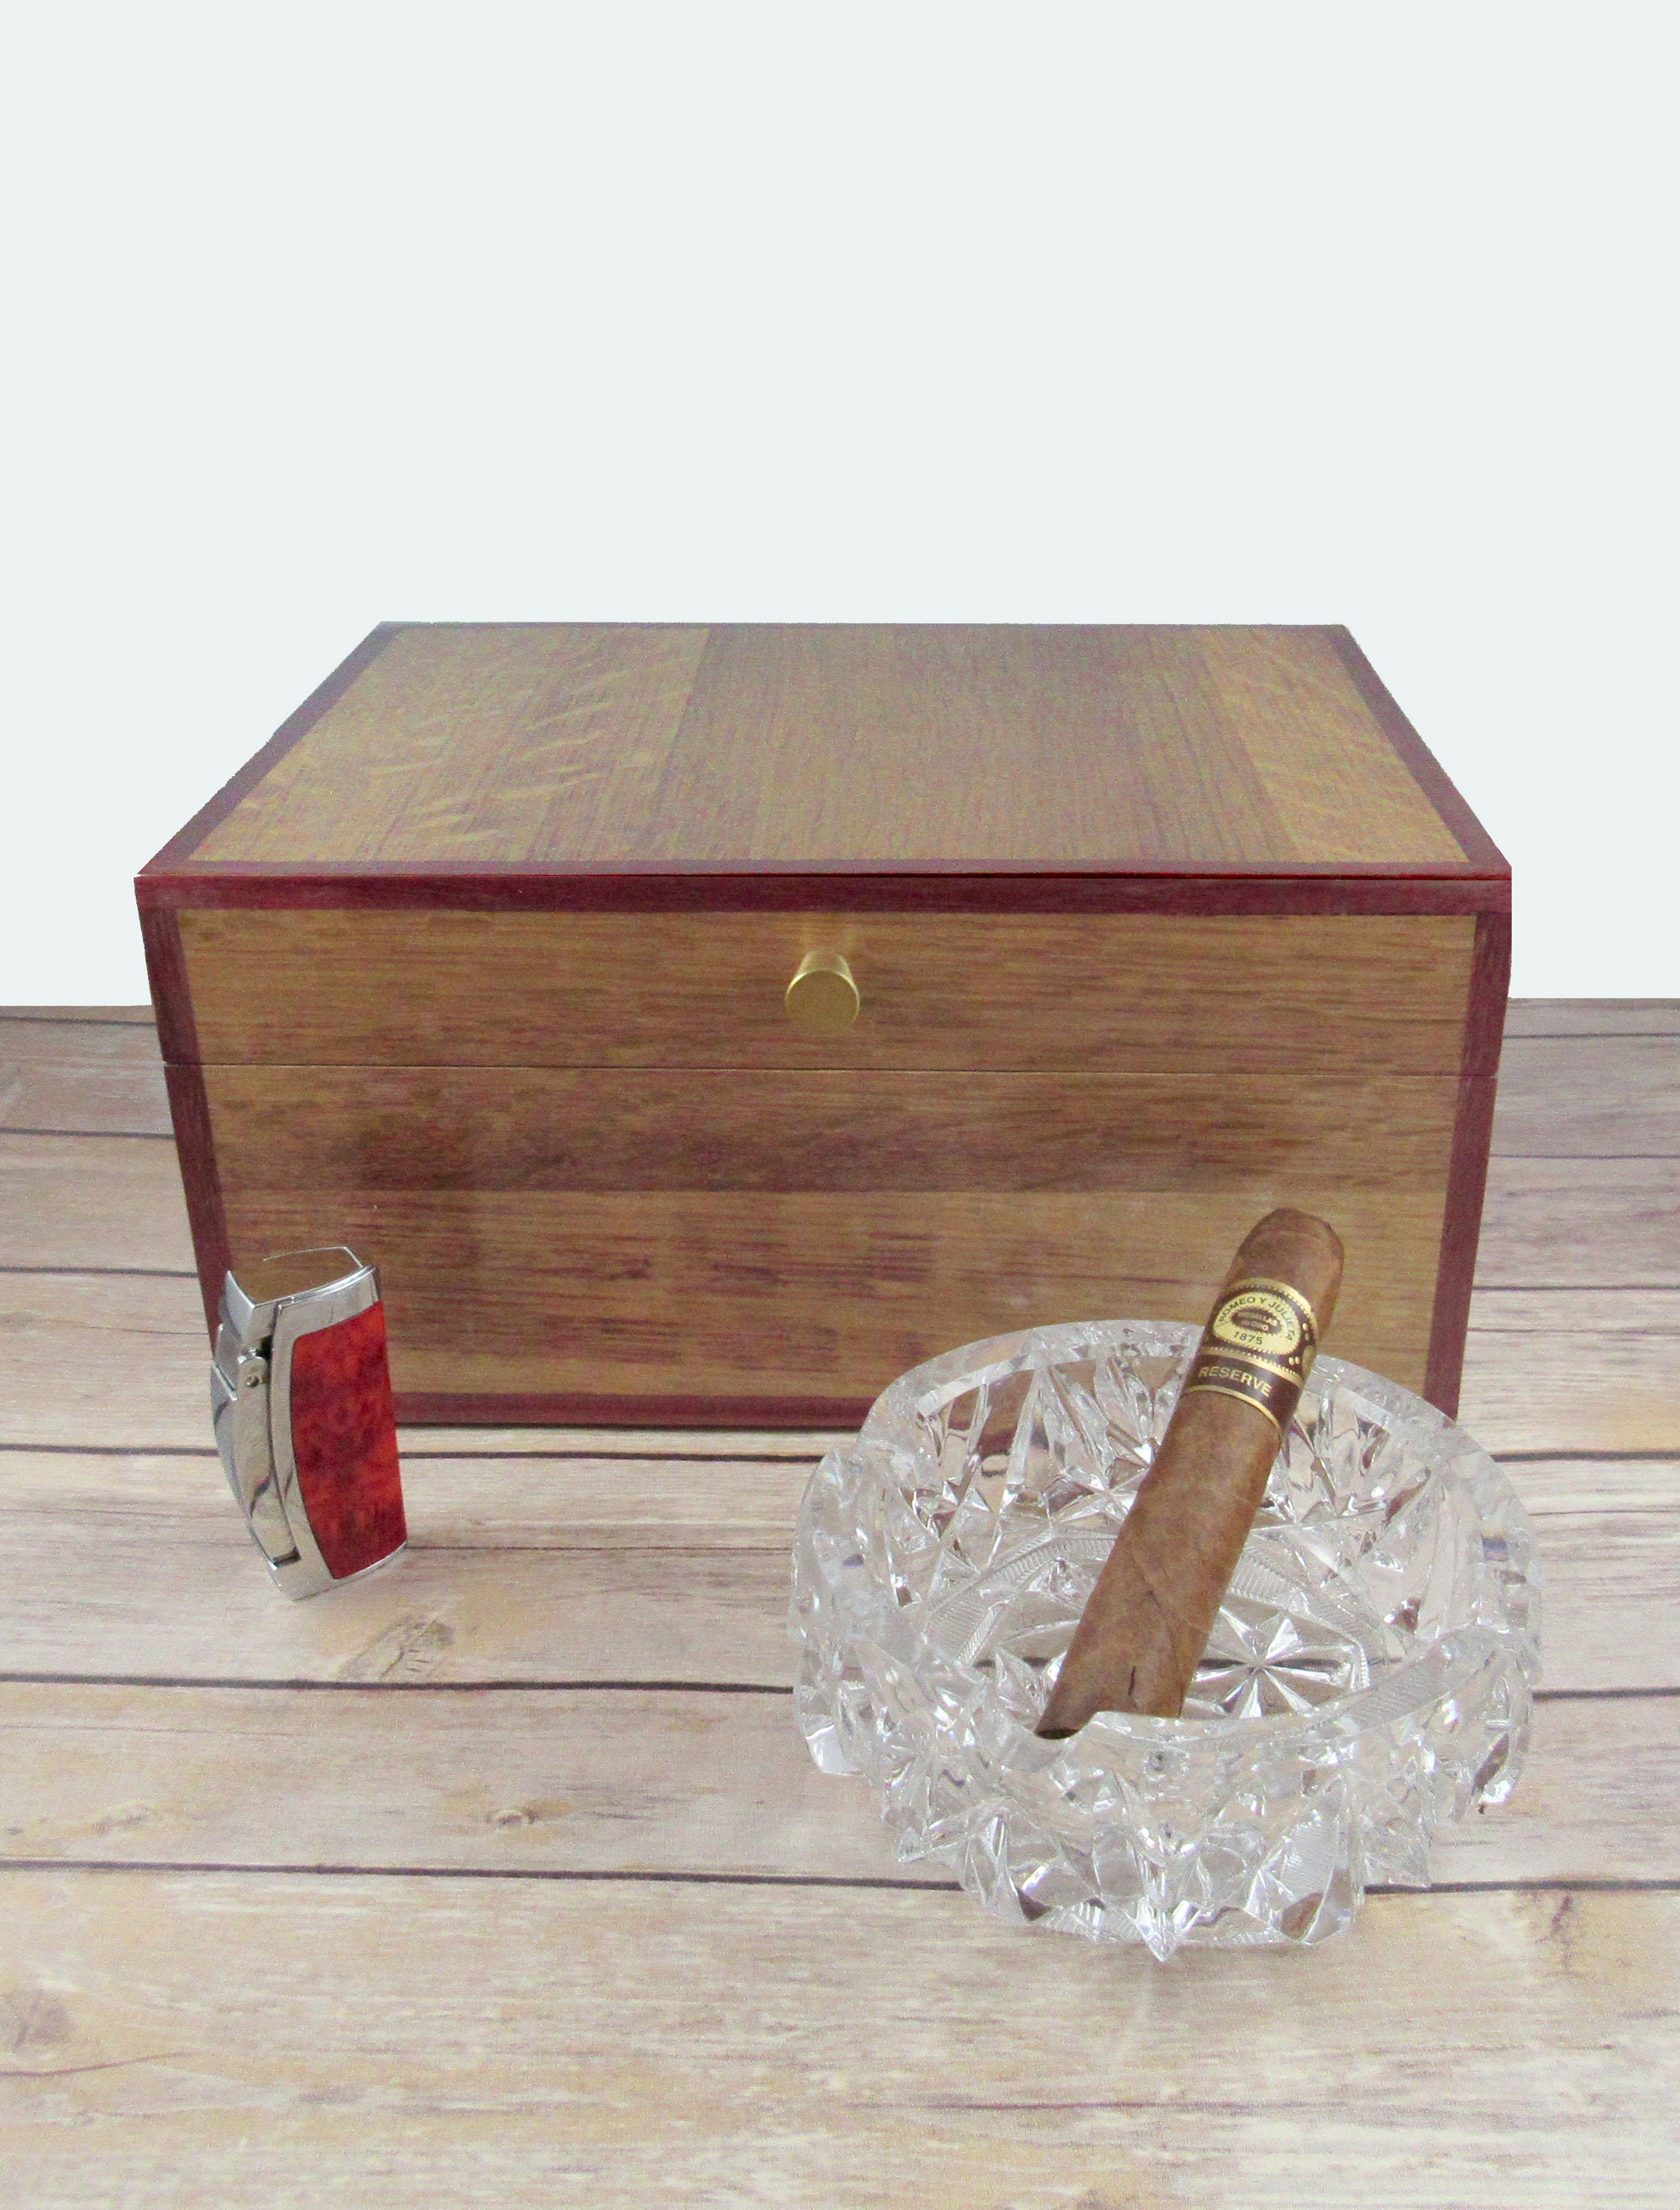 Sudan anspore Opstå Wine Barrel Humidor With Spanish Cedar Lining Cigar Box - Etsy